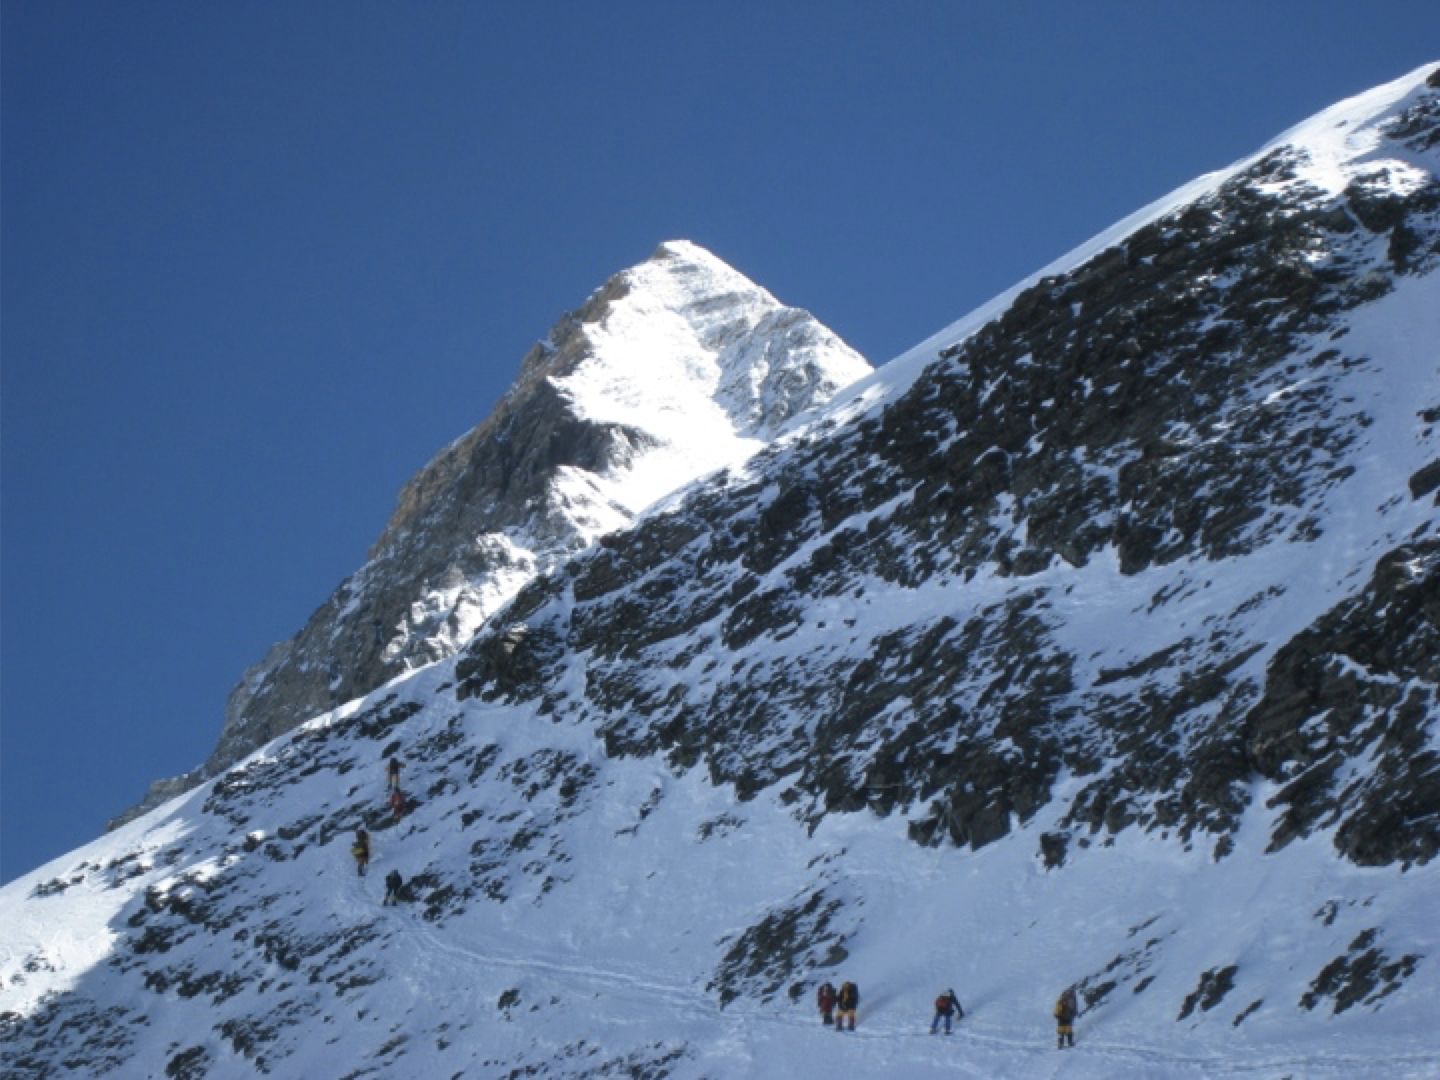 Everest SE Ridge from Geneva SpurEverest SE Ridge from Geneva Spur